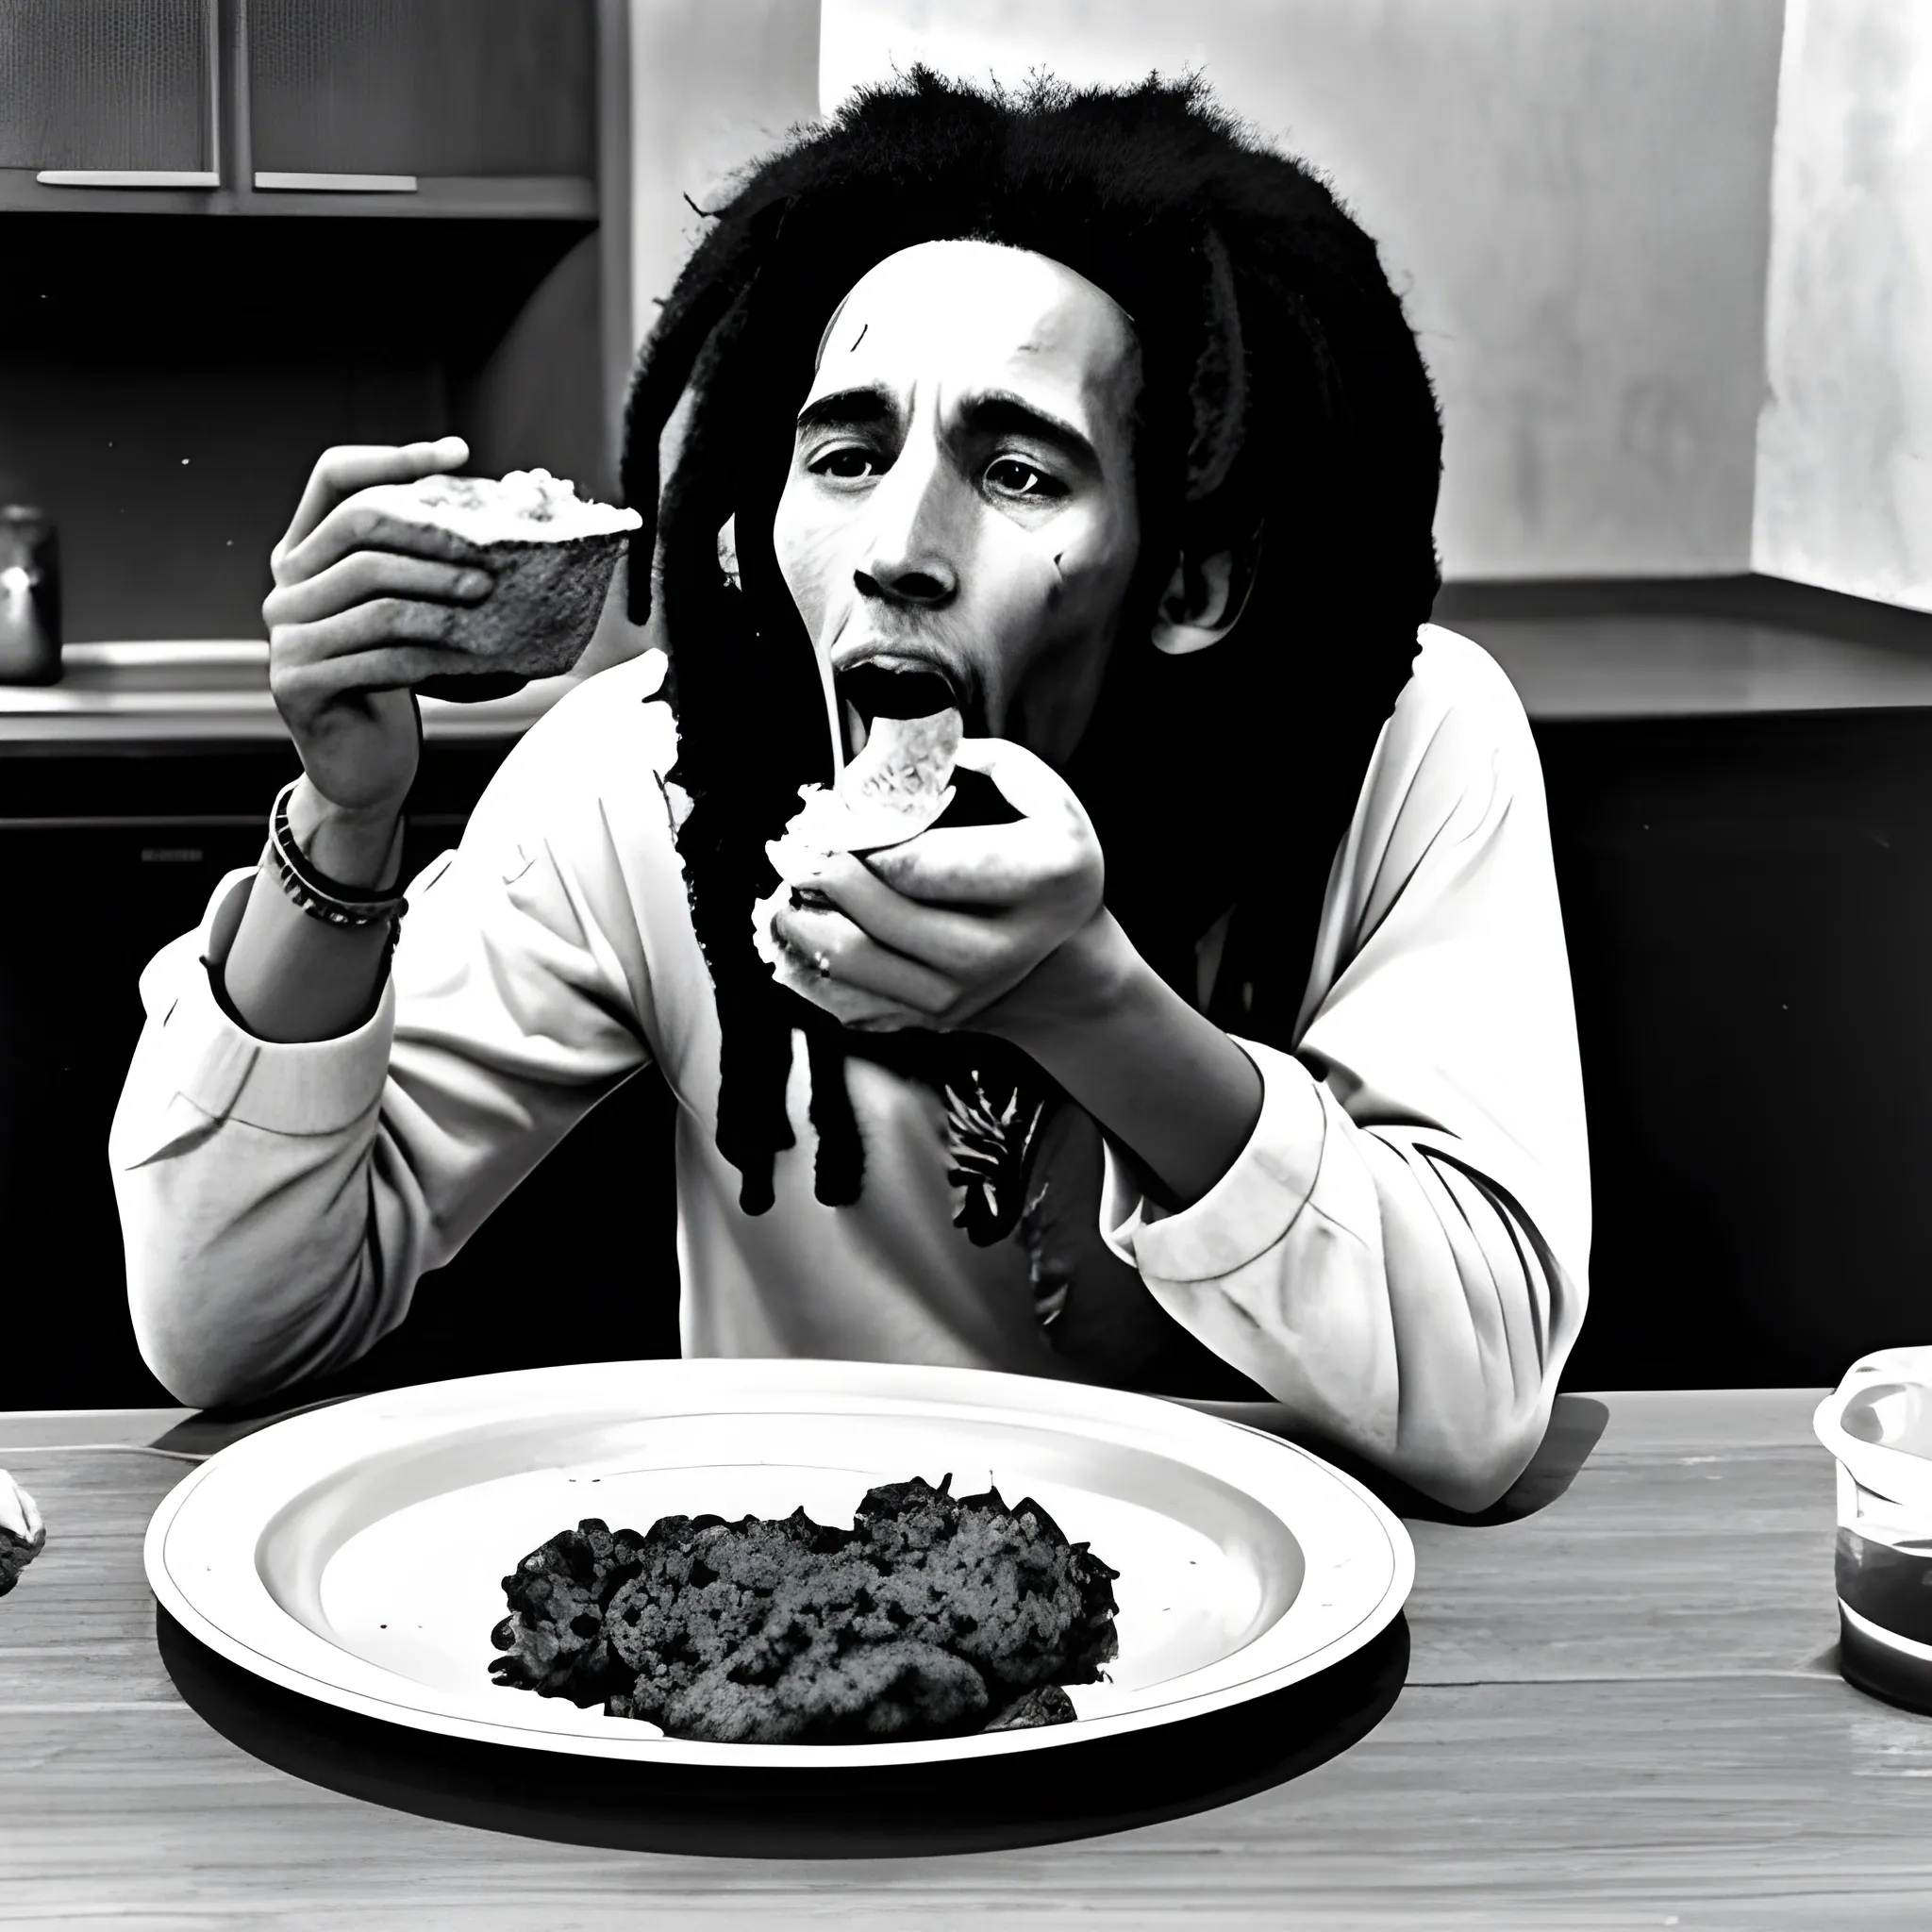 Bob Marley Eating hungry!